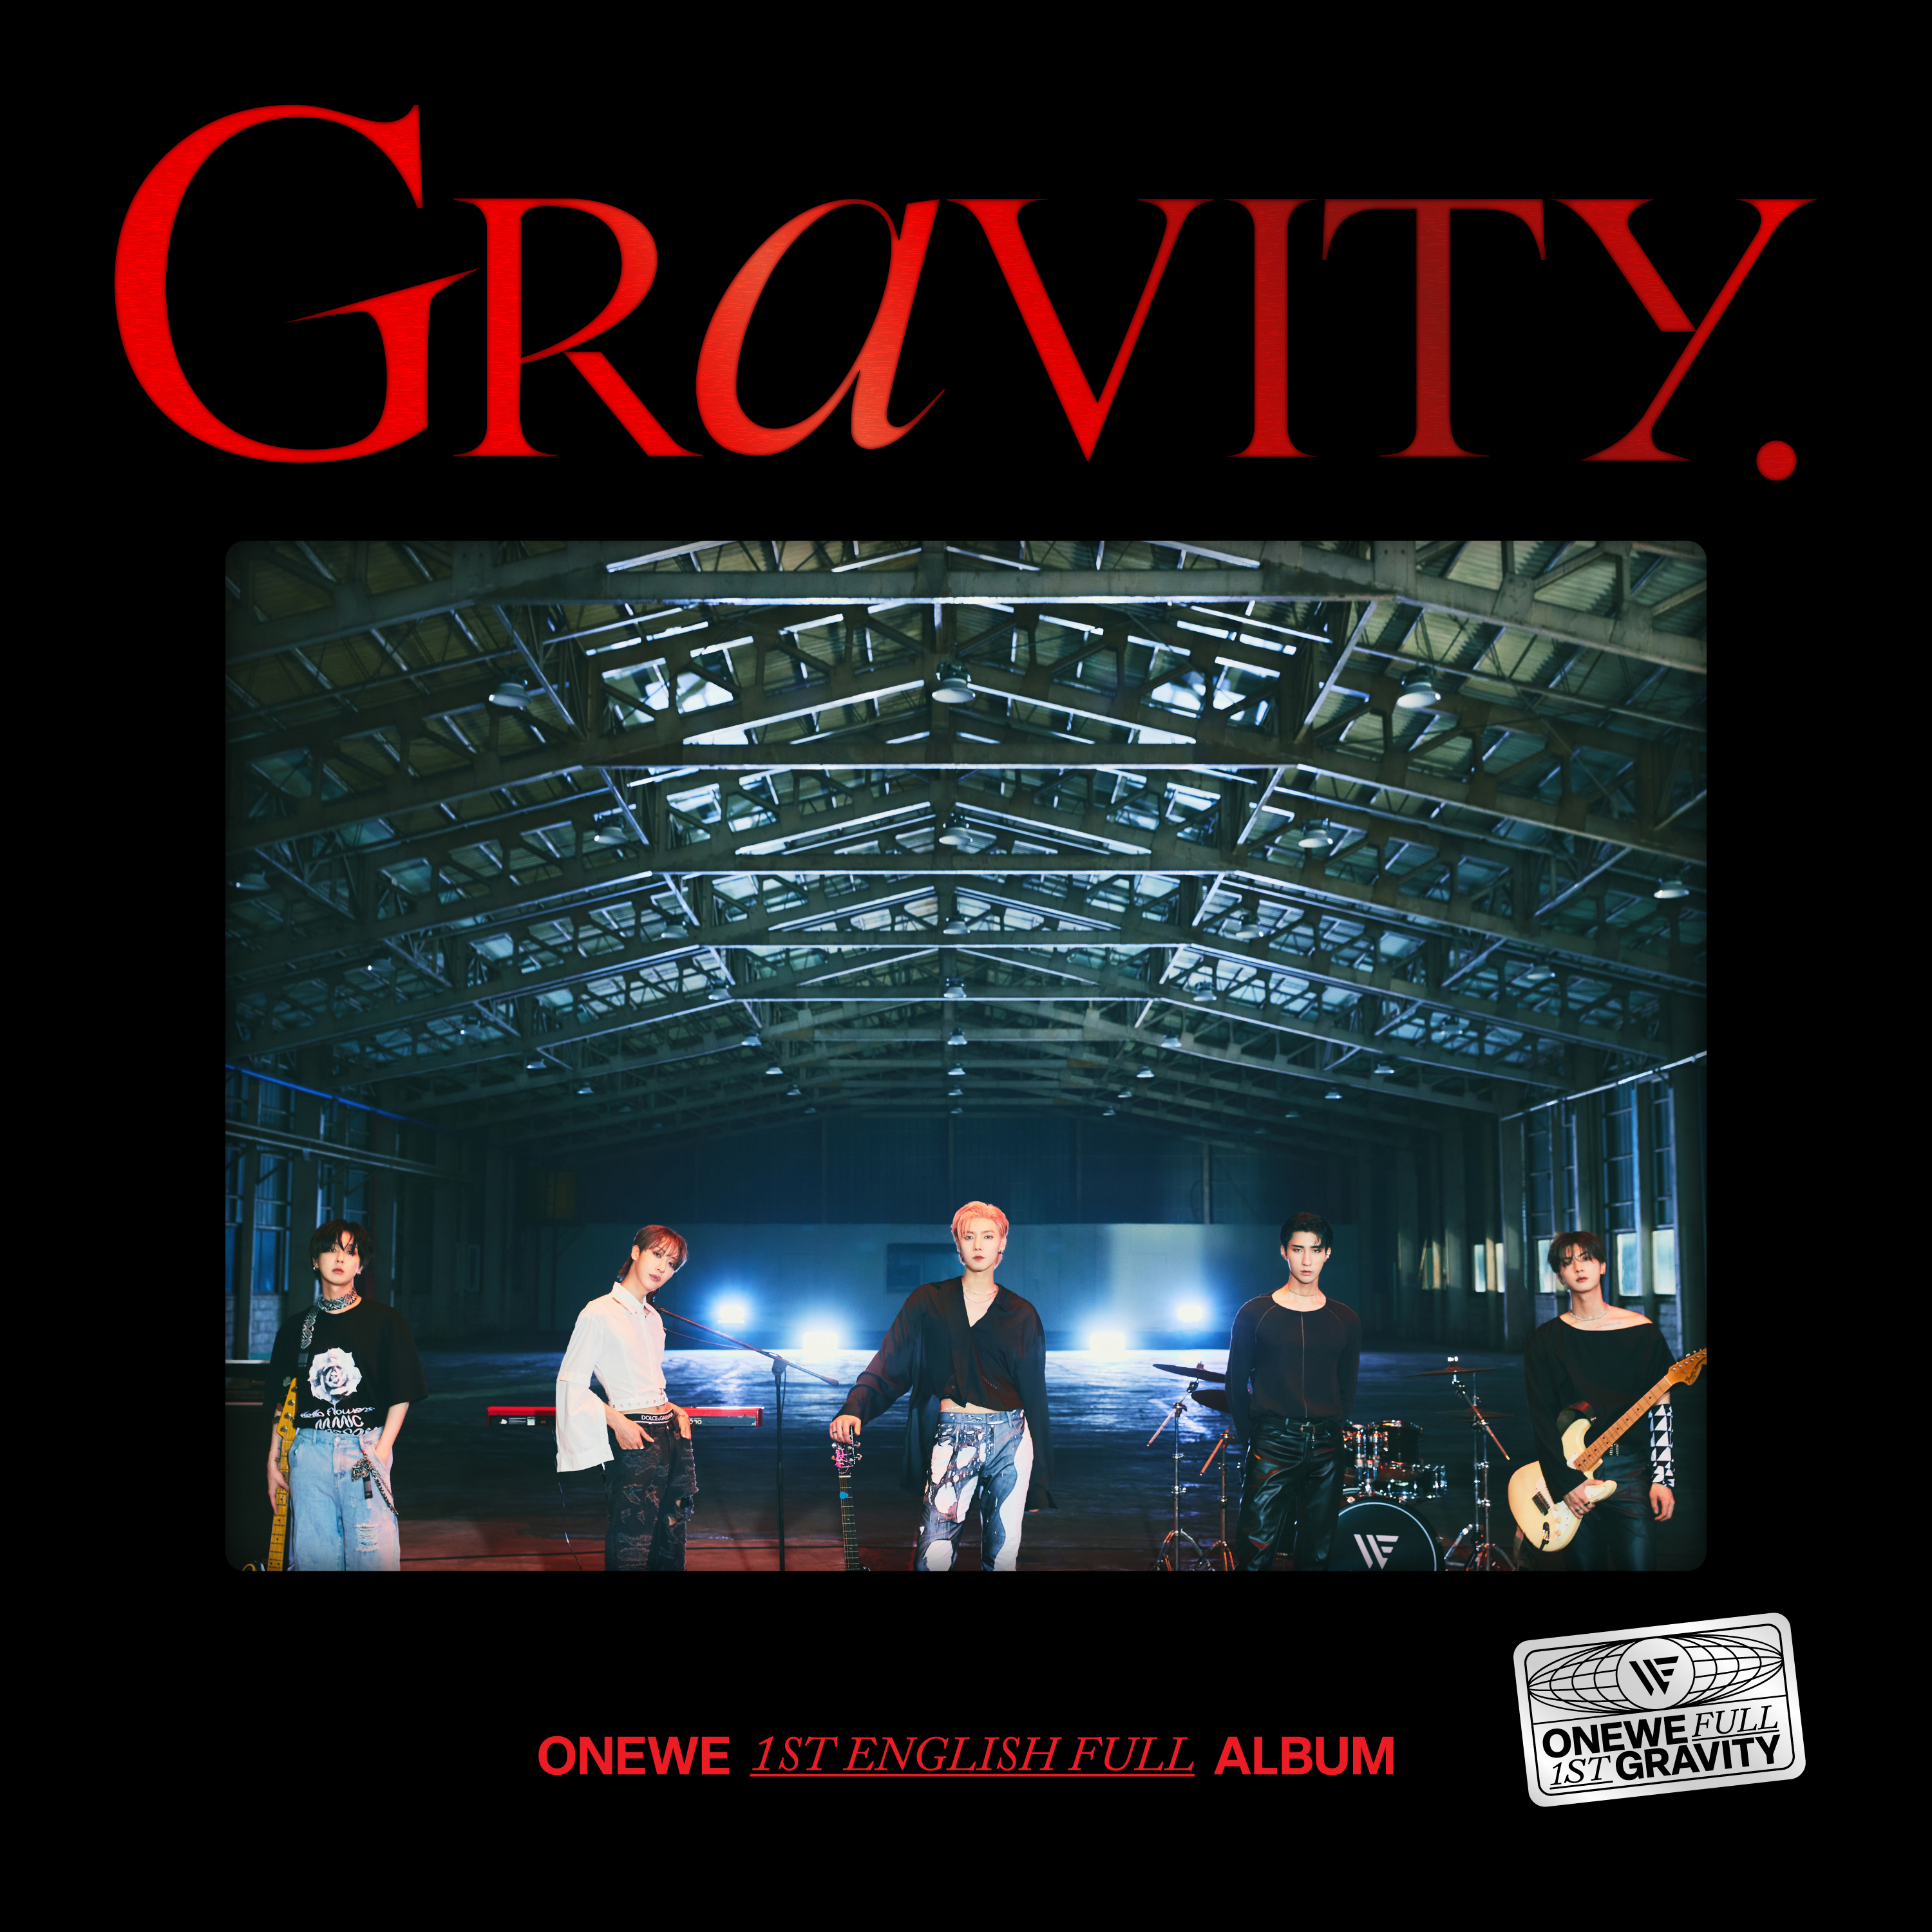 Onewe-1st_english_full_album-gravity-web_jacket